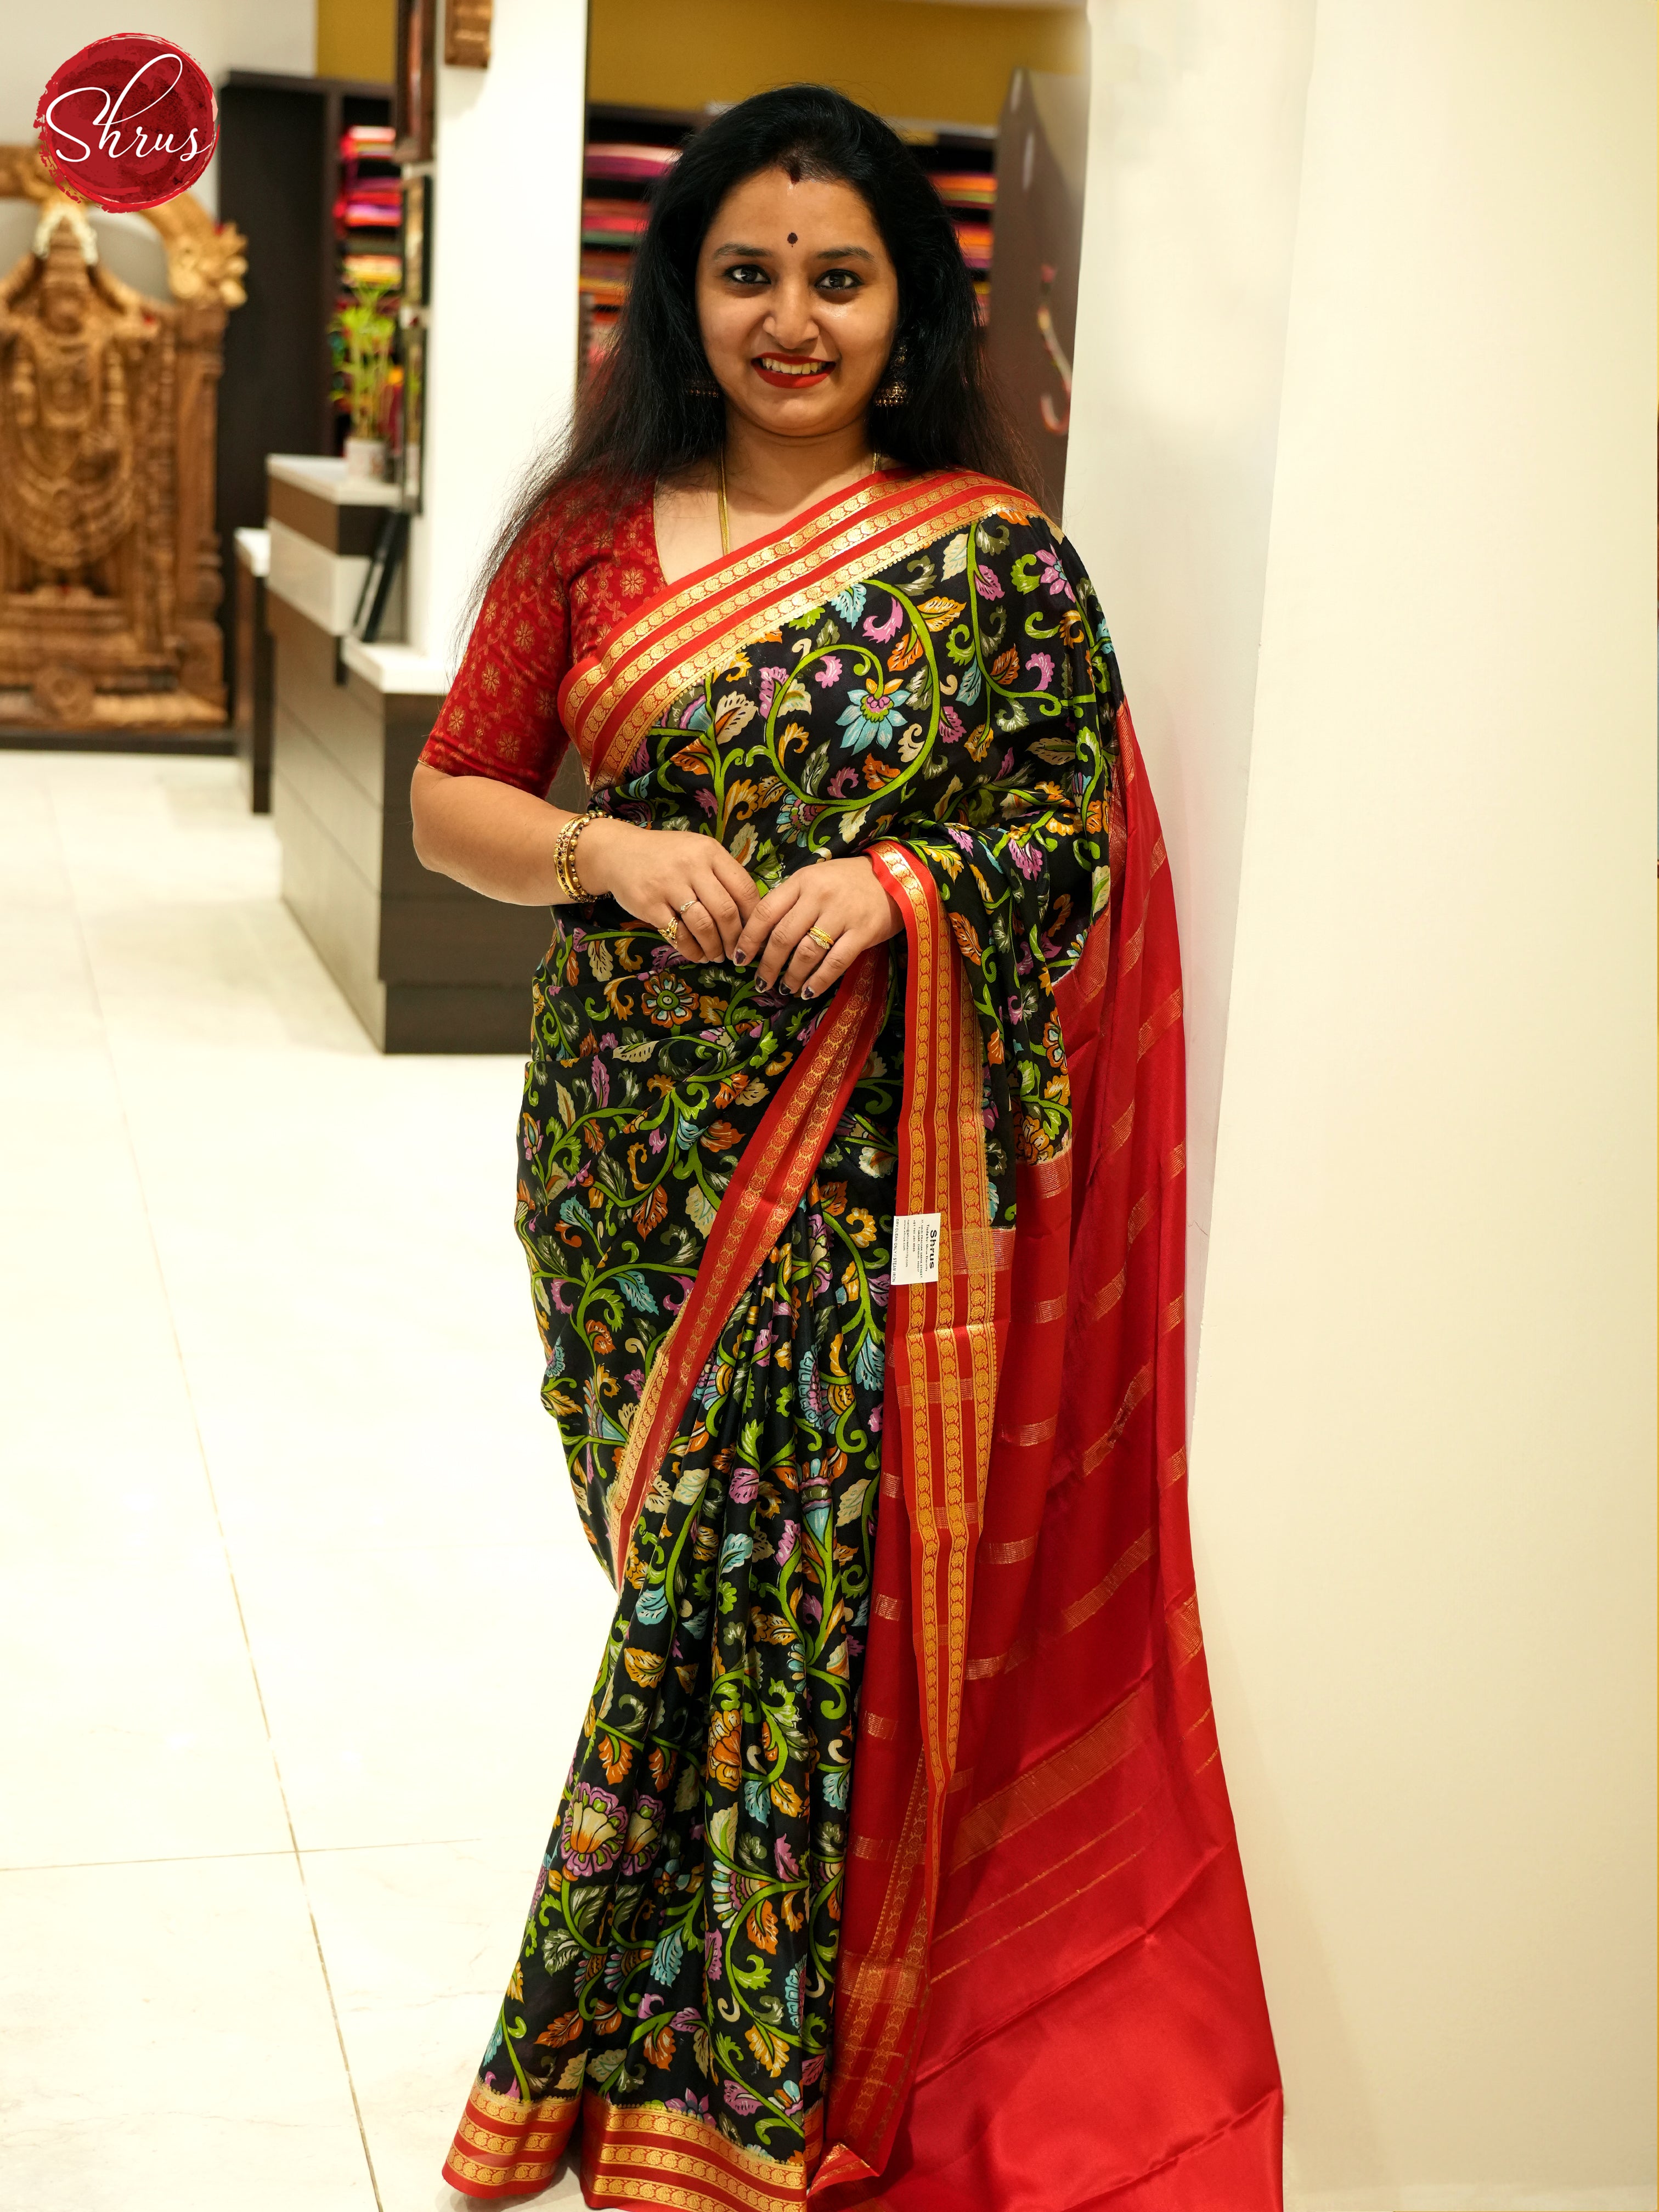 Black and Red - Mysore Silk Saree - Shop on ShrusEternity.com